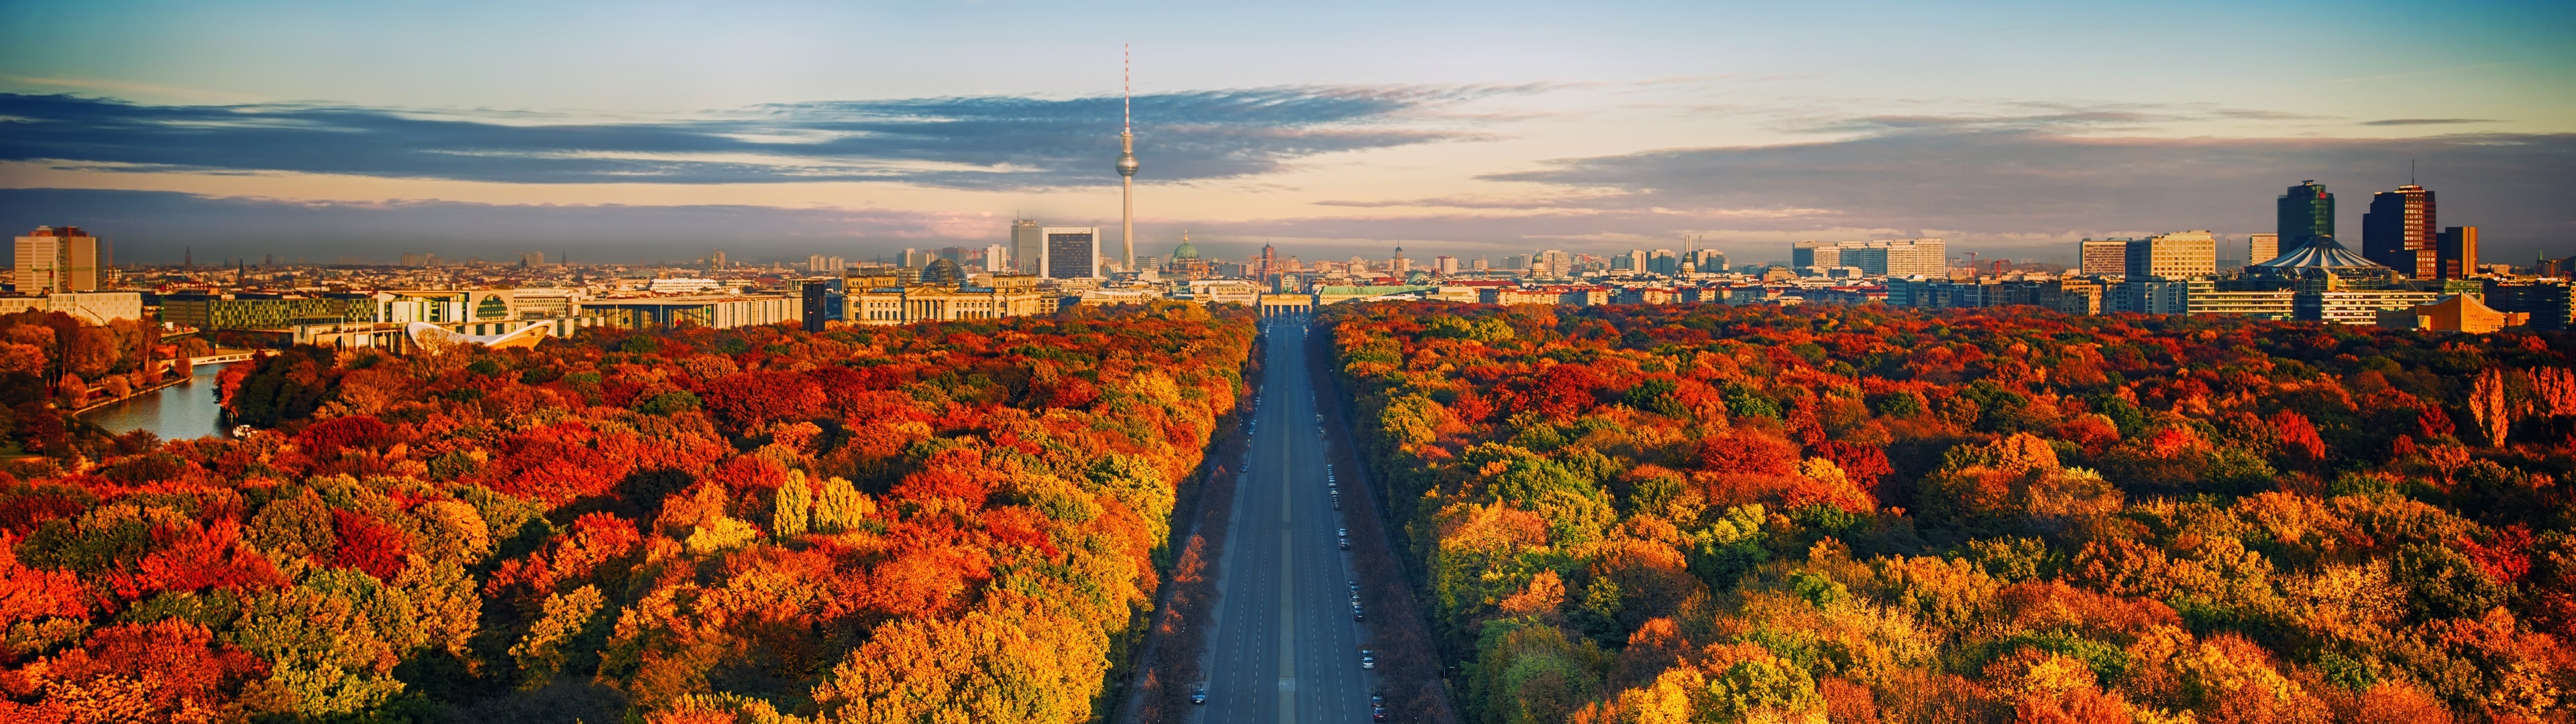 Berlin Skyline, Autumn trees, 4K wallpaper, Dynamic cityscape, 3840x1080 Dual Screen Desktop